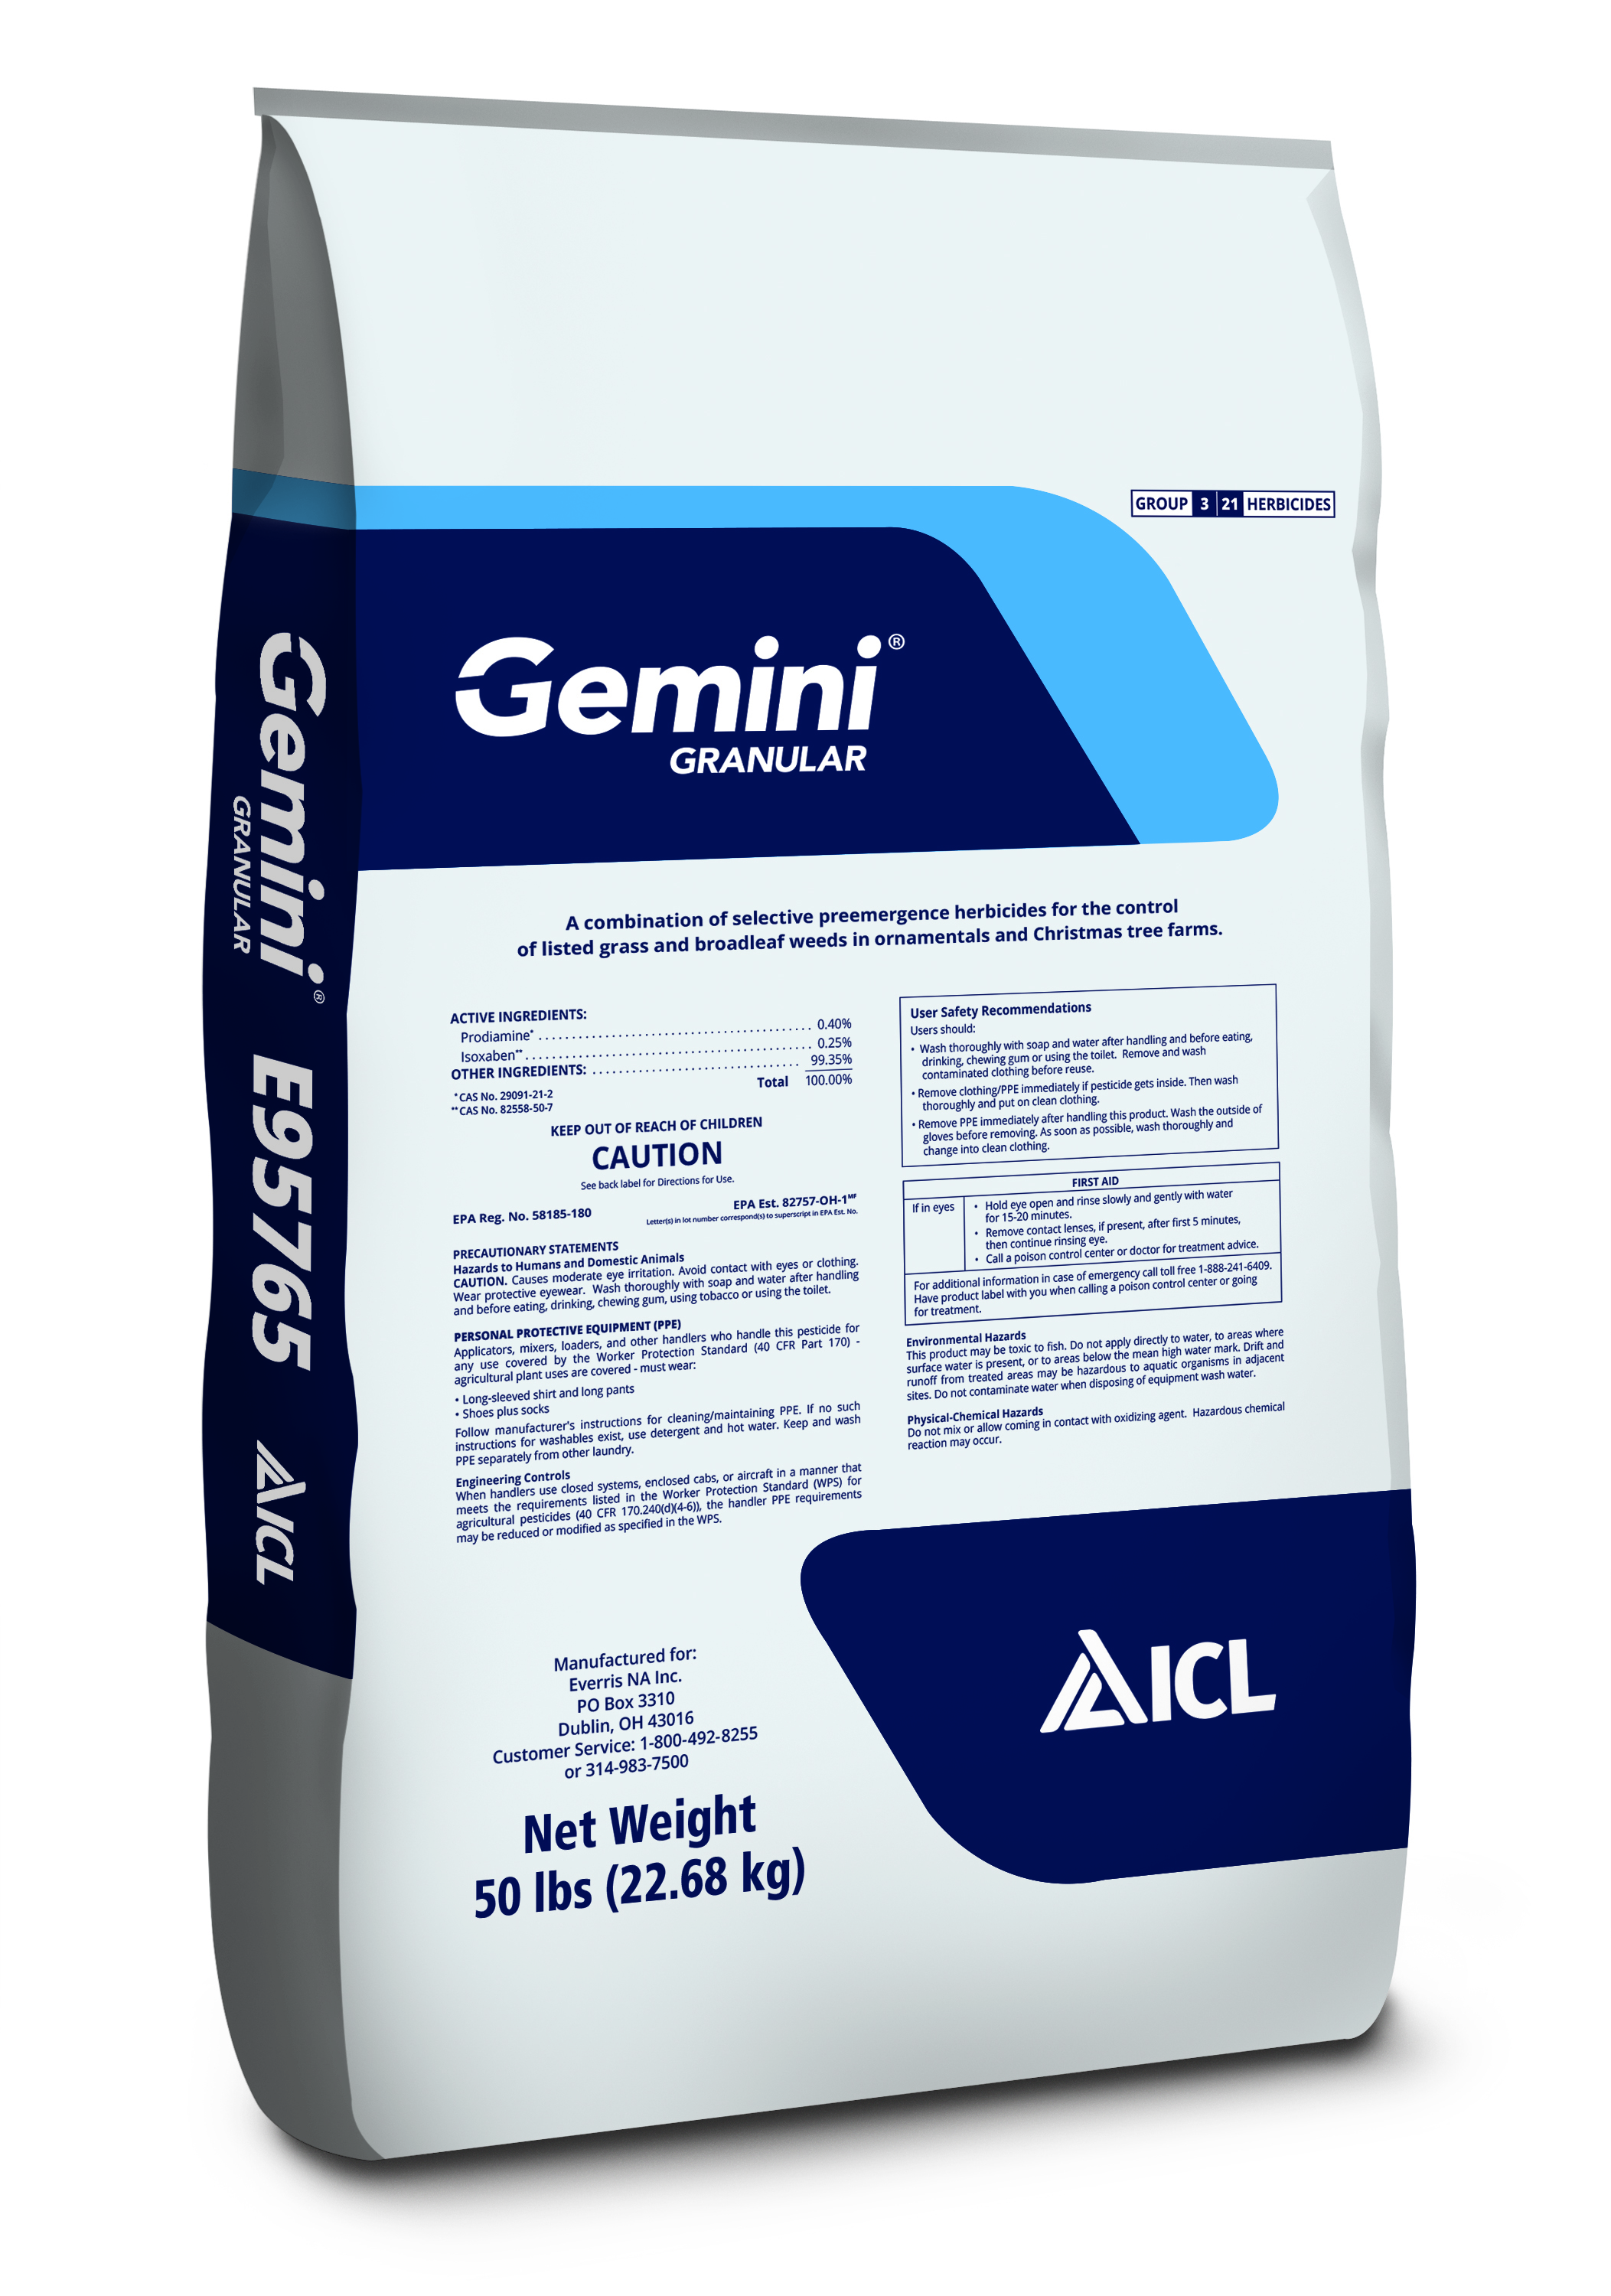 Gemini® Granular